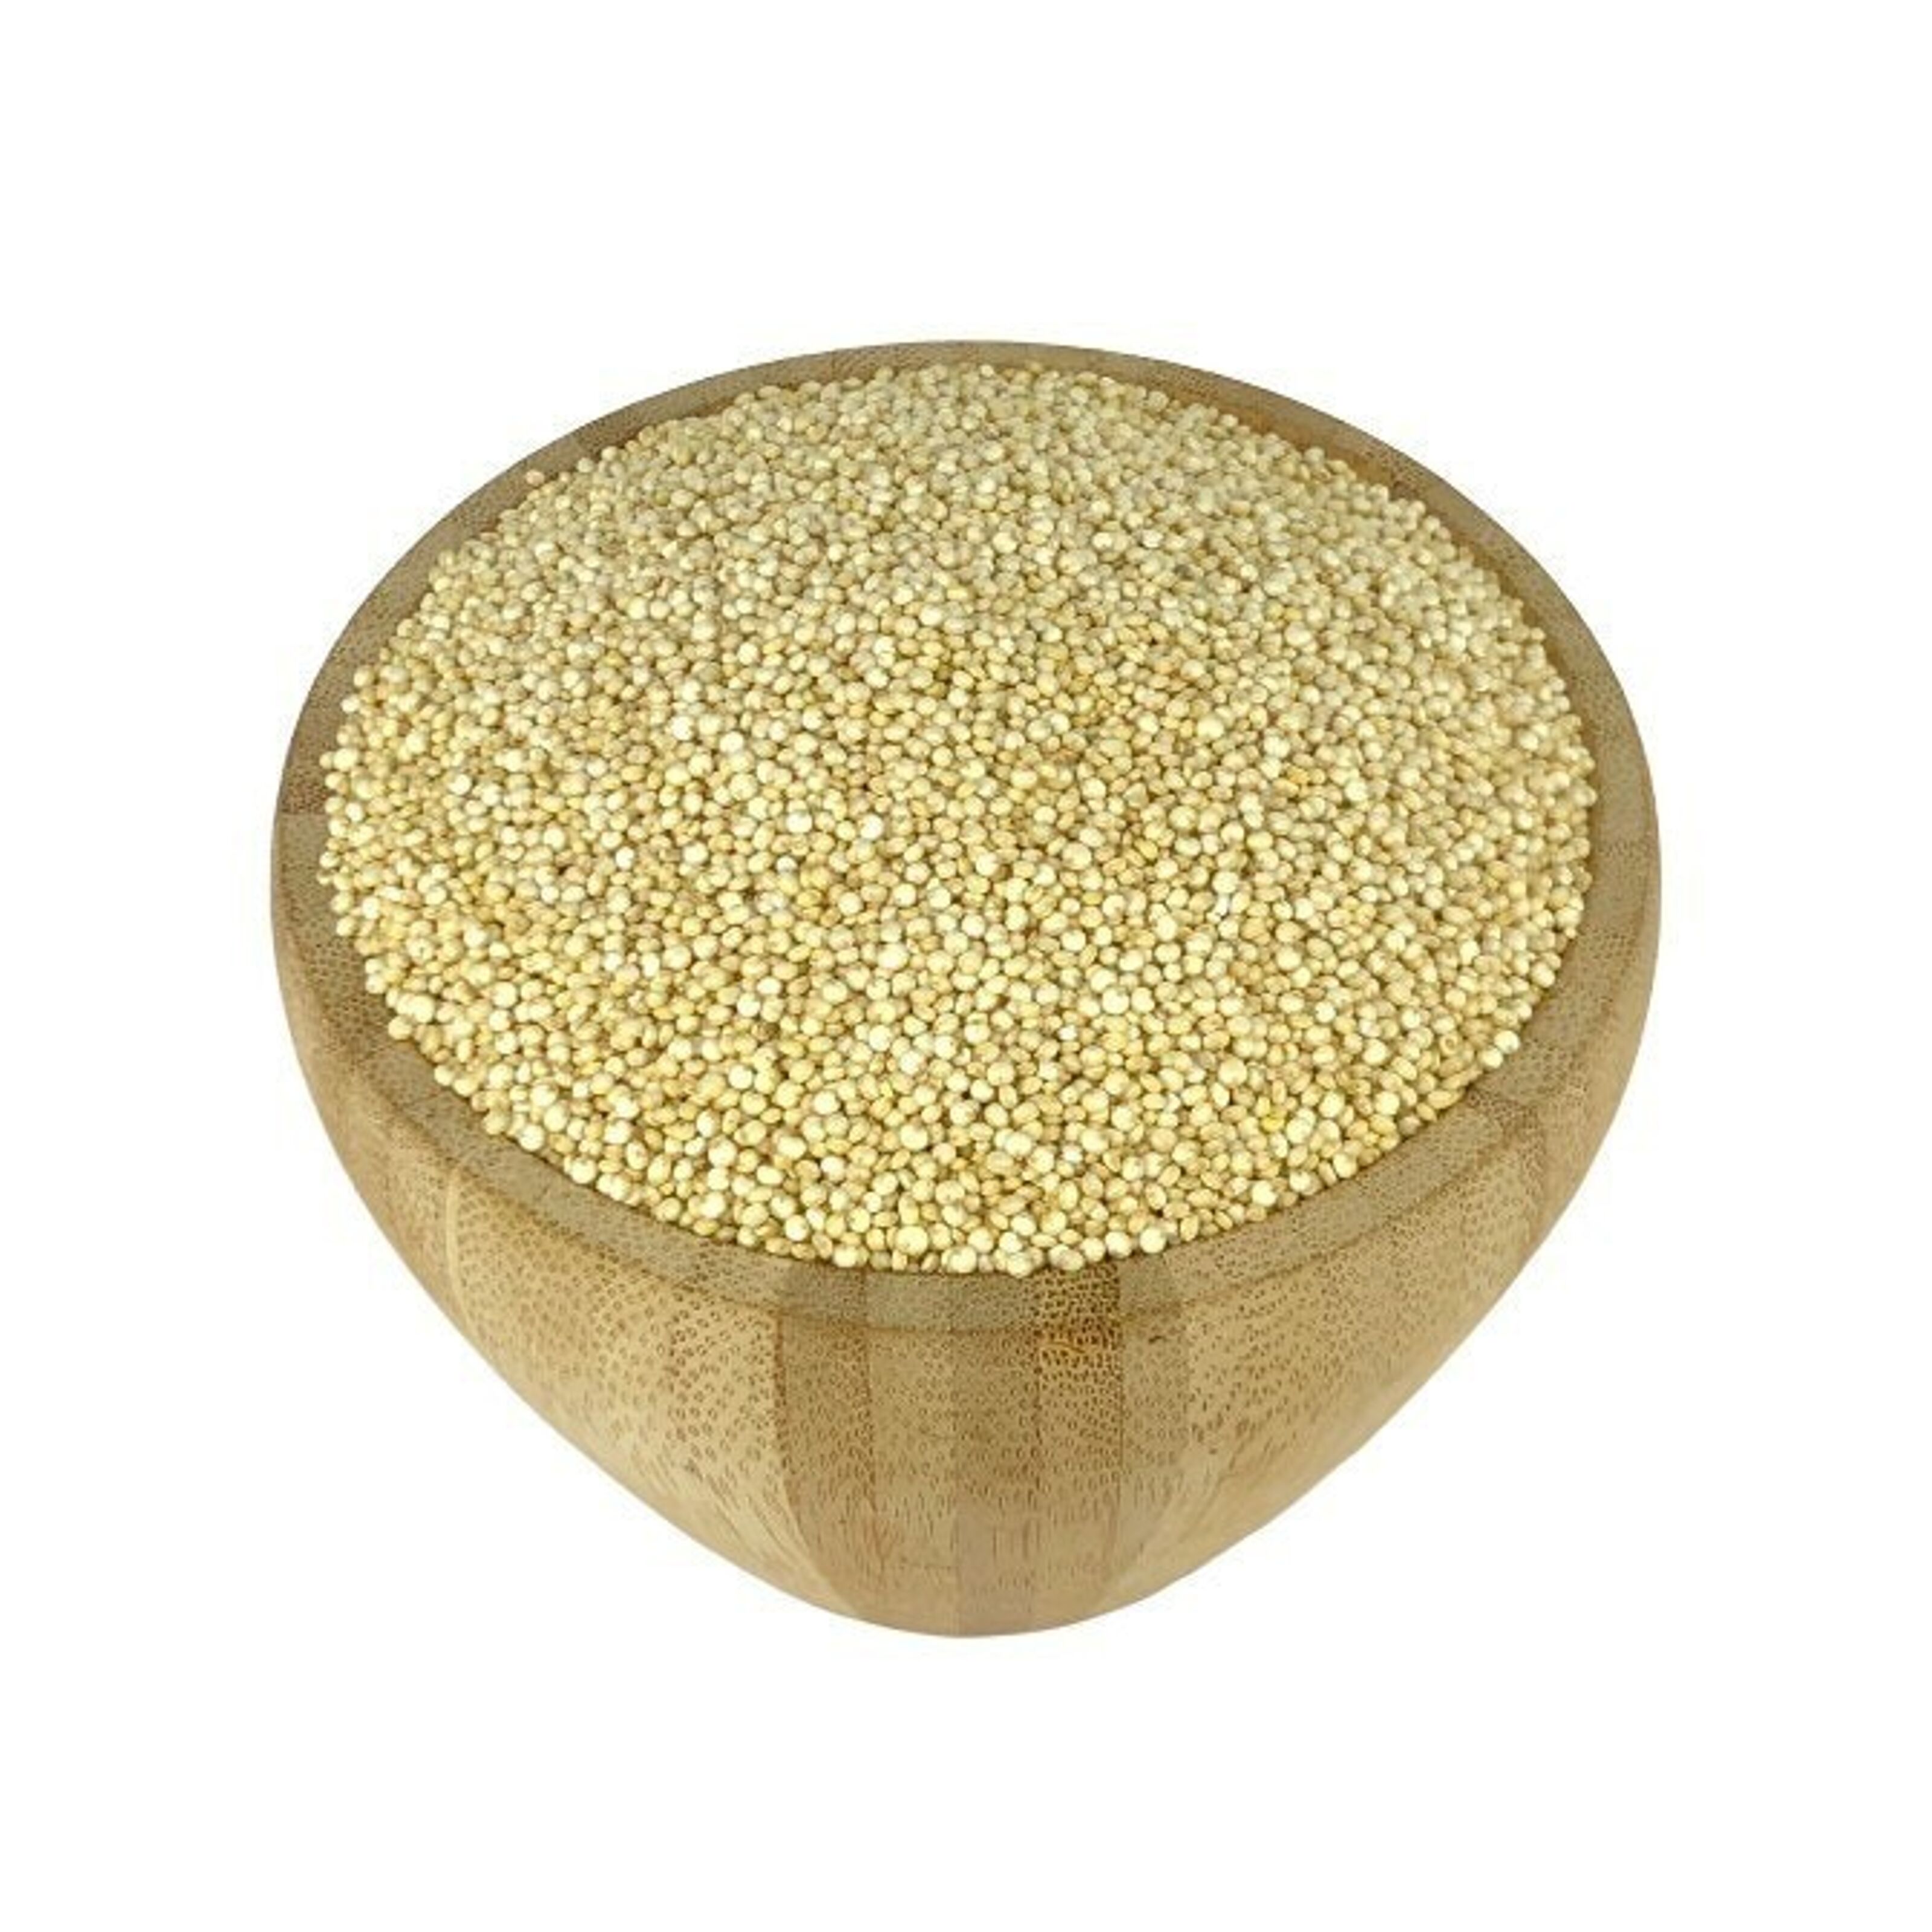 Quinoa blanc bio - BIOTERROIR